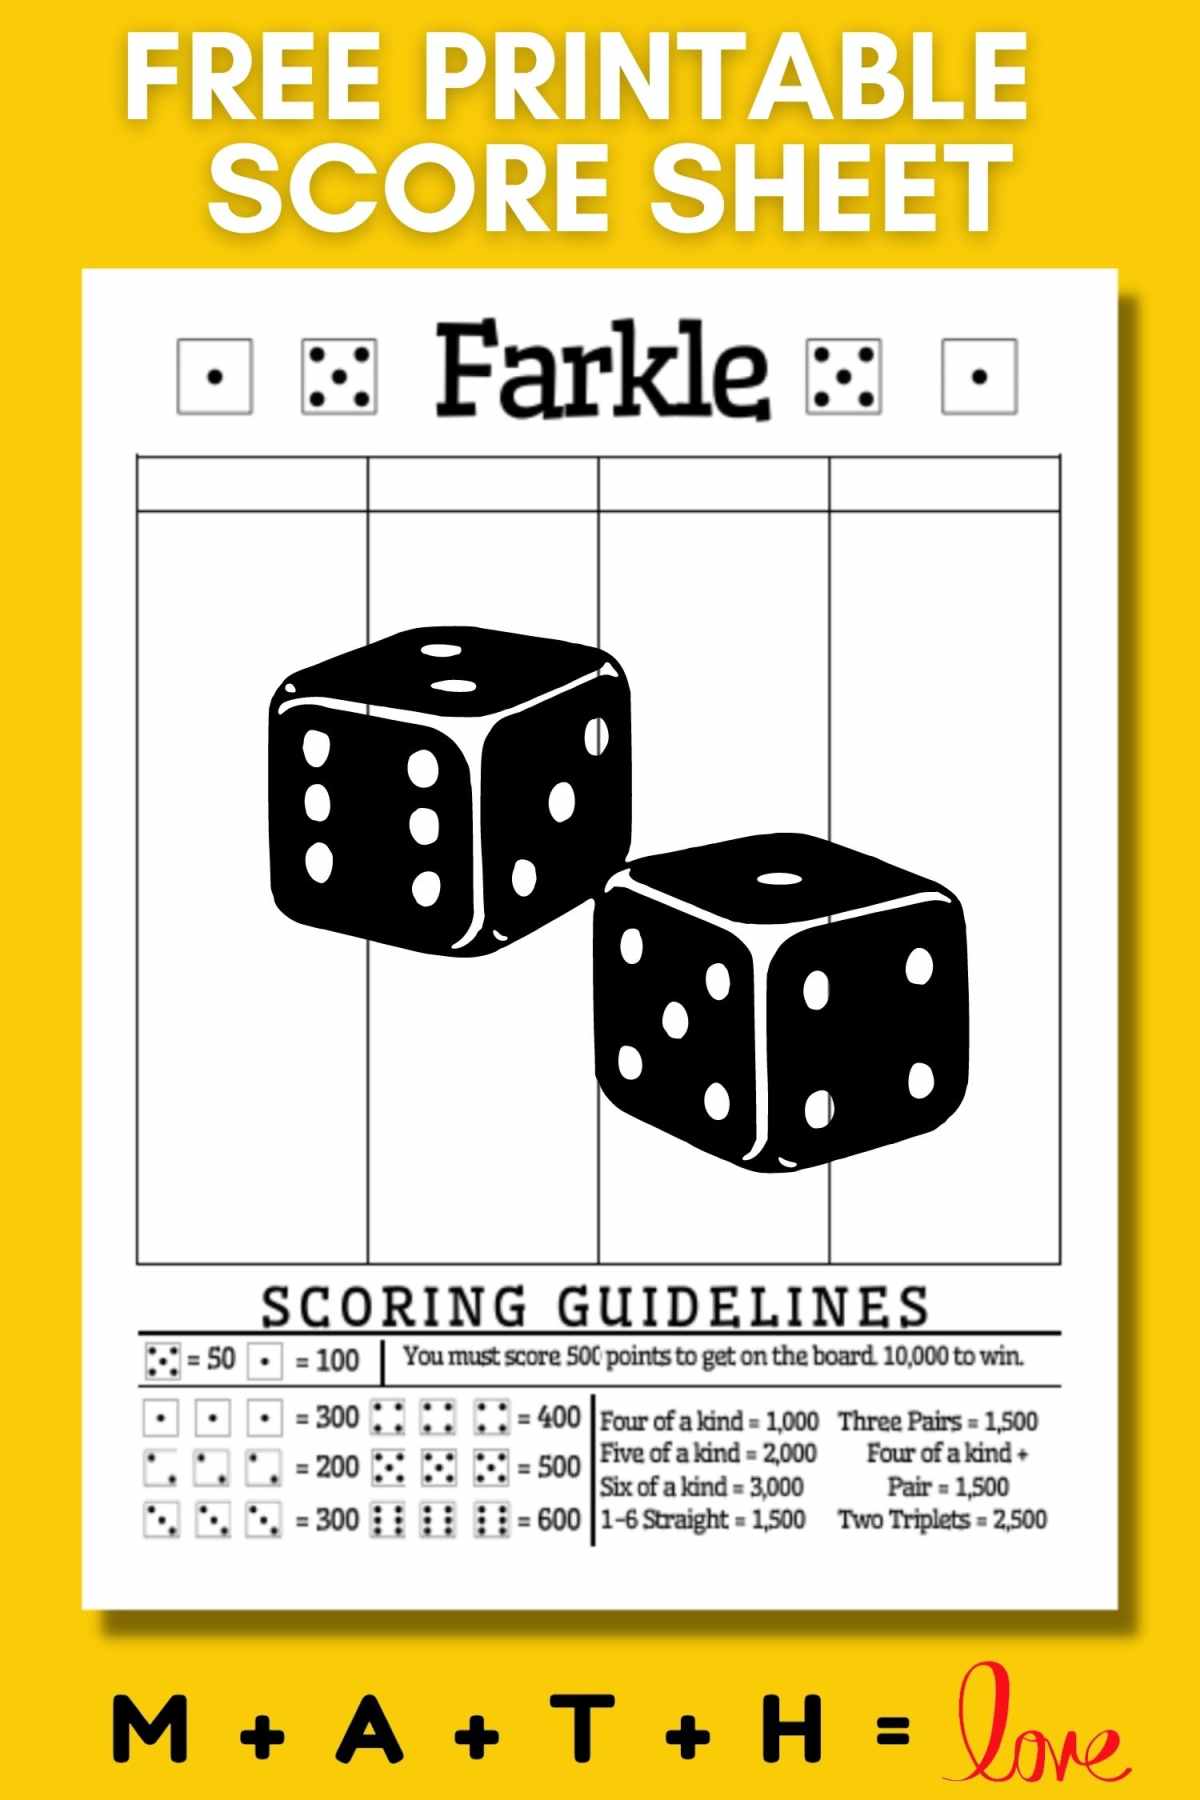 Farkle Score Sheet.